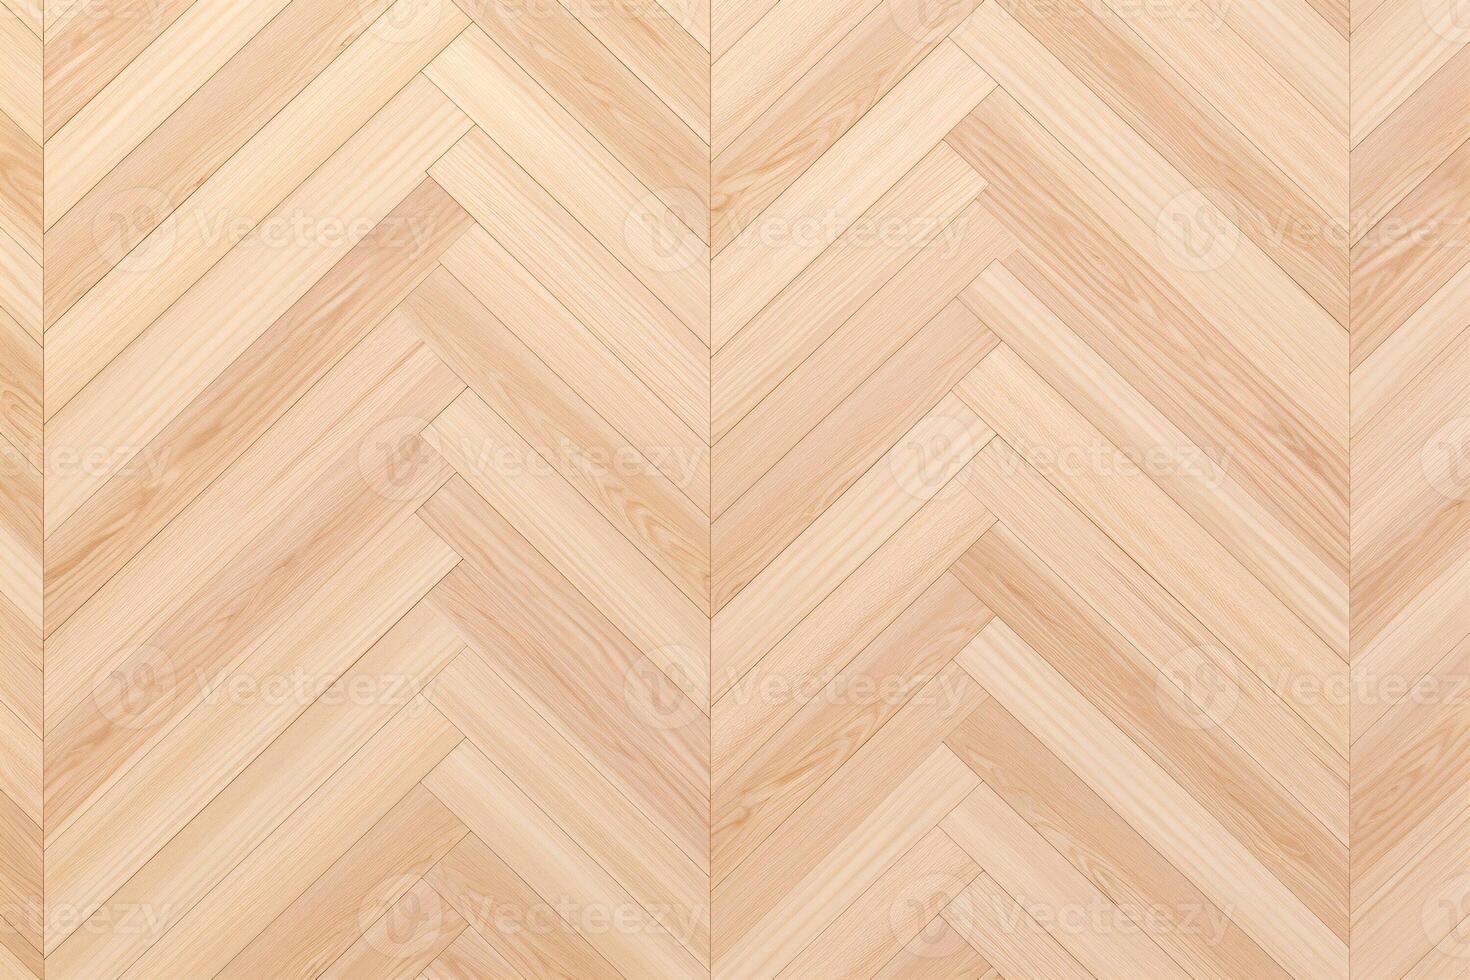 Parquet Wood Pattern Background, Wood Parquet texture, wooden parquet background, wood plank herringbone pattern, parquet floor, photo